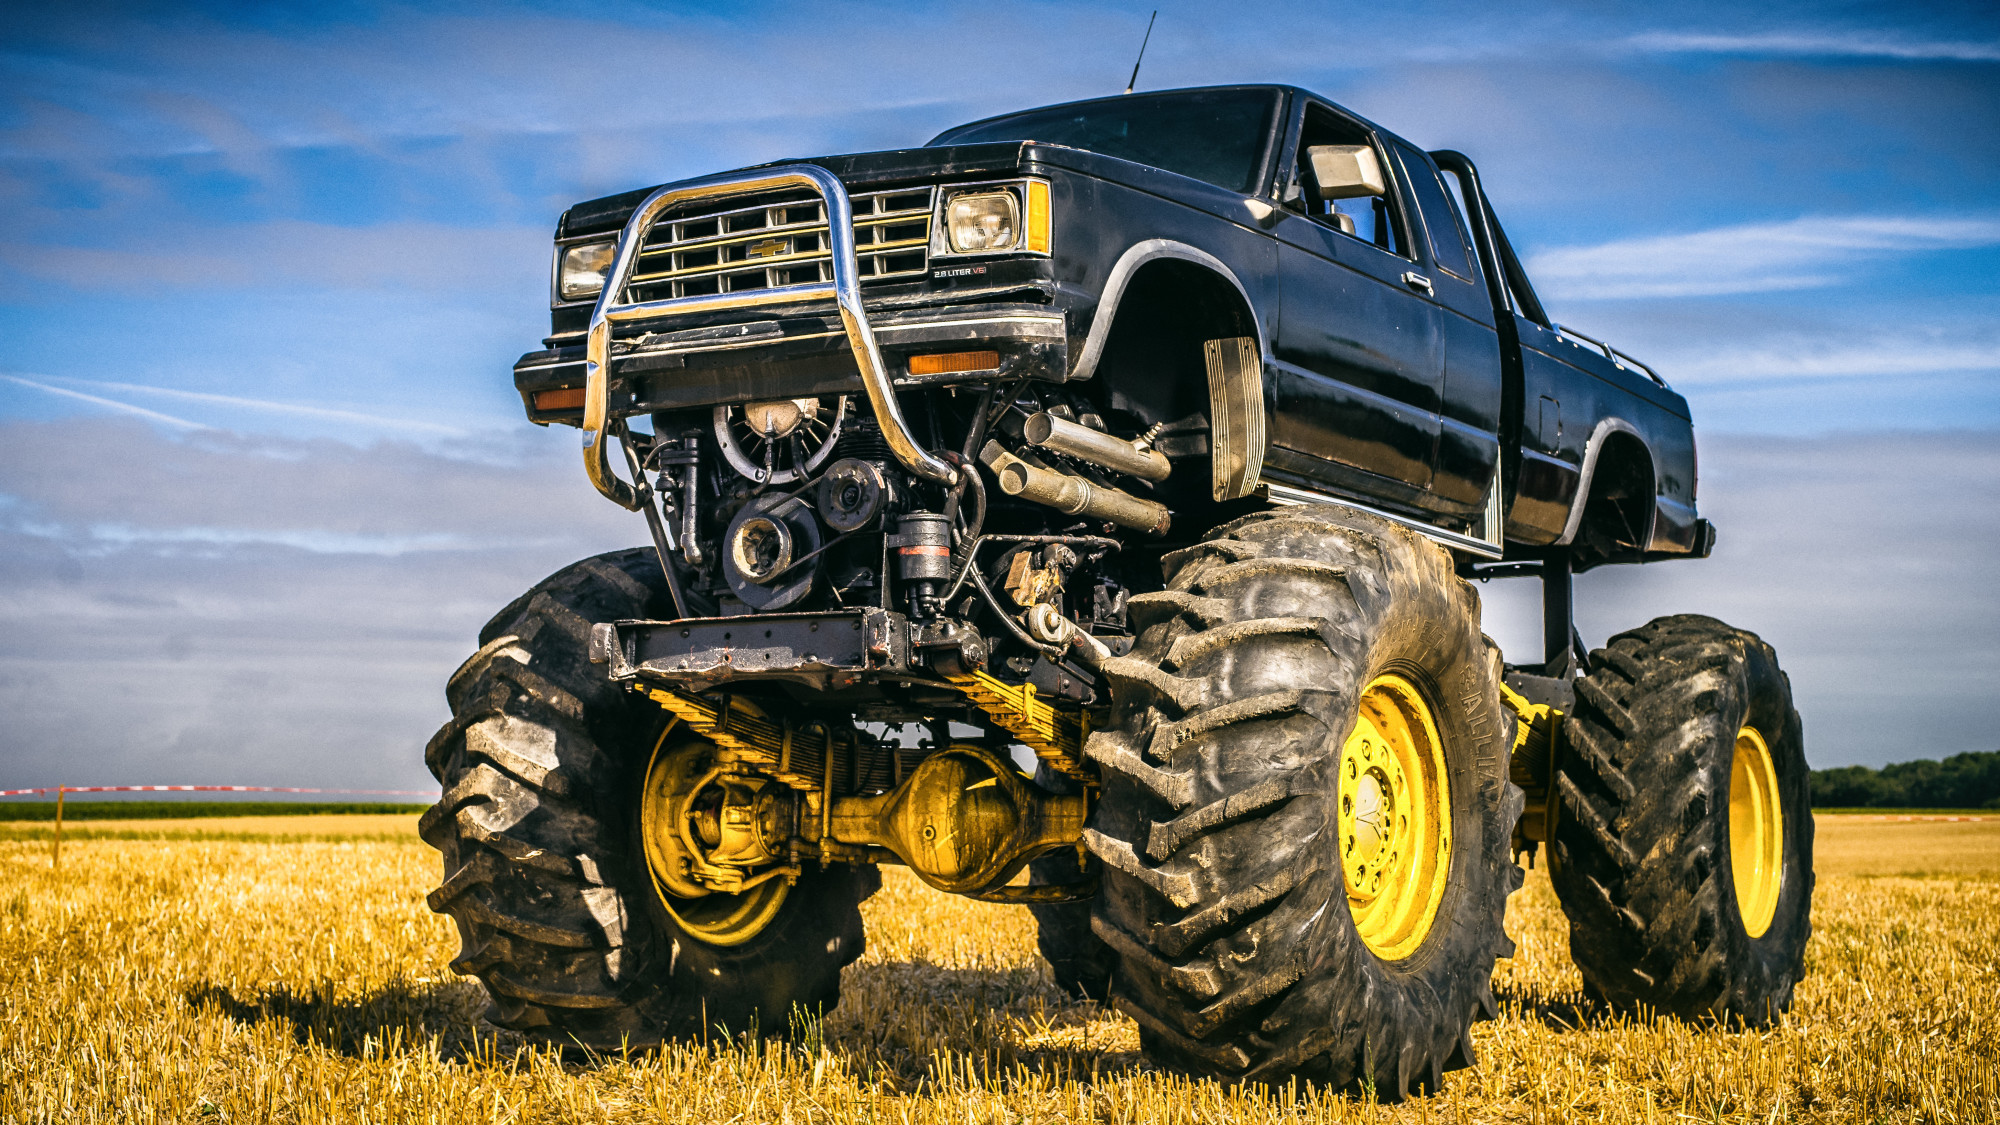 monster truck in field